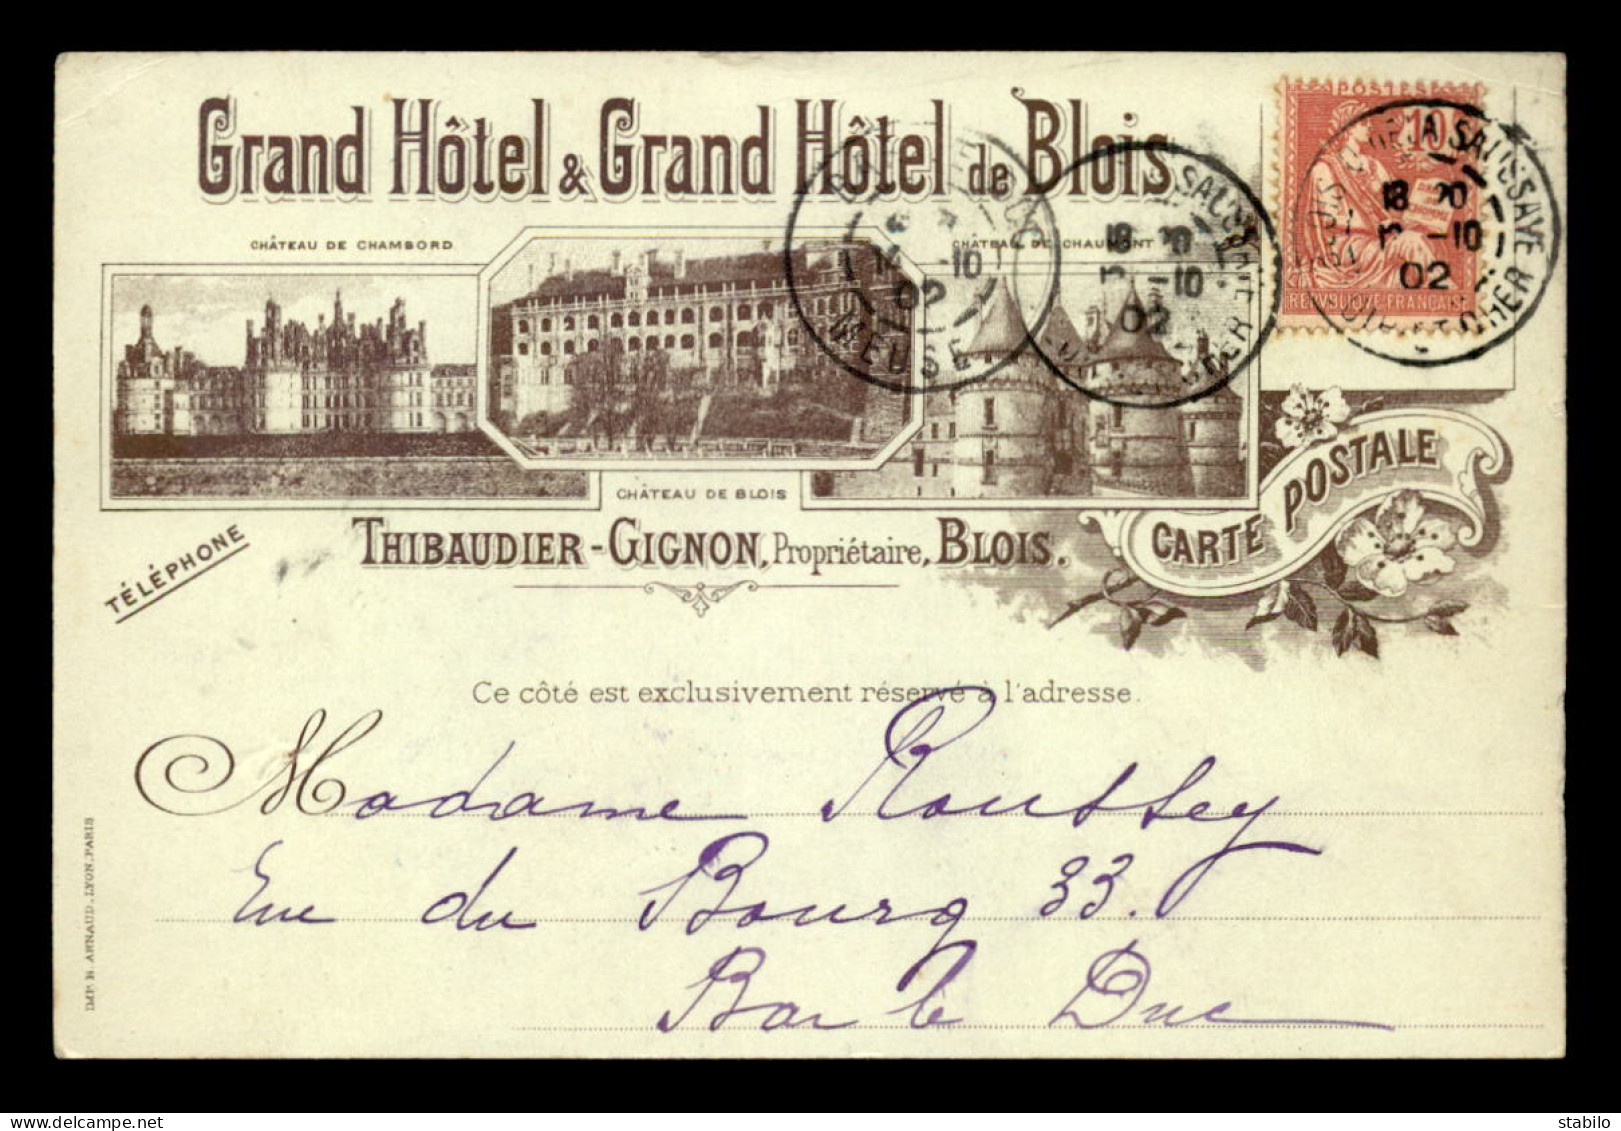 41 - BLOIS - GRAND HOTEL & GRAND HOTEL DE BLOIS - THIBAUDIER-GIGNON PROPRIETAIRE - COMMANDE DE CONFITURES DE BAR-LE-DUC  - Blois